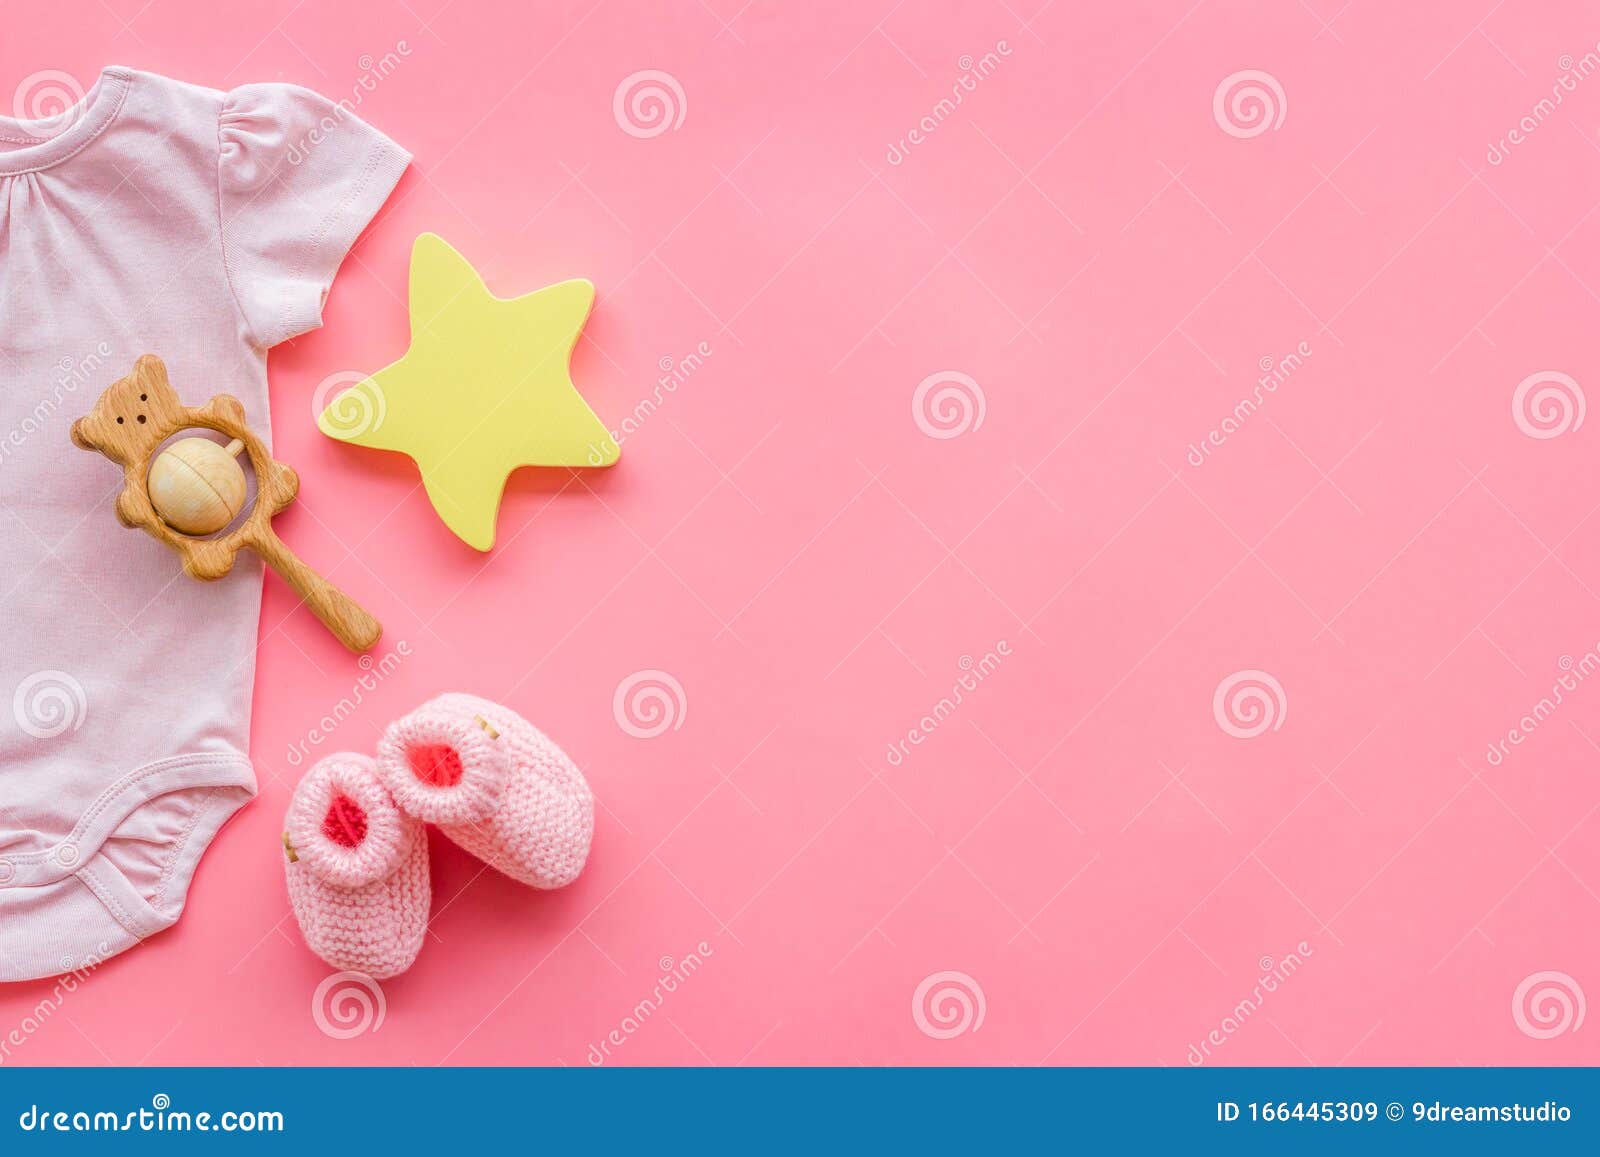 Các bà mẹ ơi! Hãy cùng trang trí cho bé gái yêu của bạn với những hình nền trẻ sơ sinh màu hồng, quần áo, giày và phụ kiện xinh xắn để tạo ra một bối cảnh lung linh và tuyệt vời cho bé.